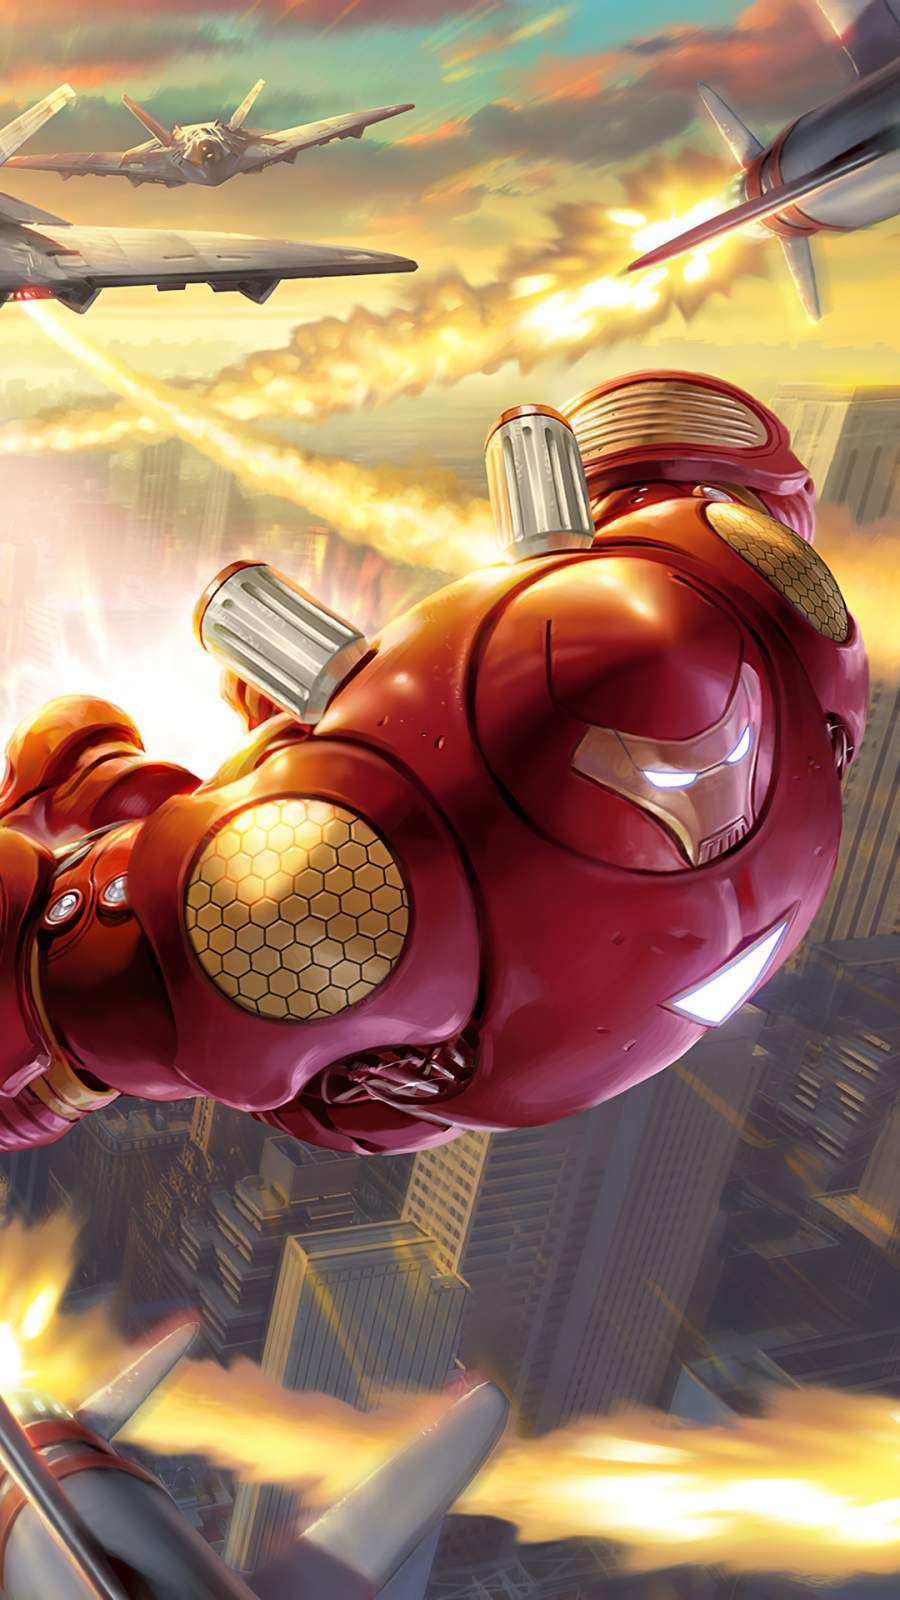 Future Hulkbuster Suit iPhone Wallpaper. Superhero movies, Marvel ultimate alliance, Best superhero movies